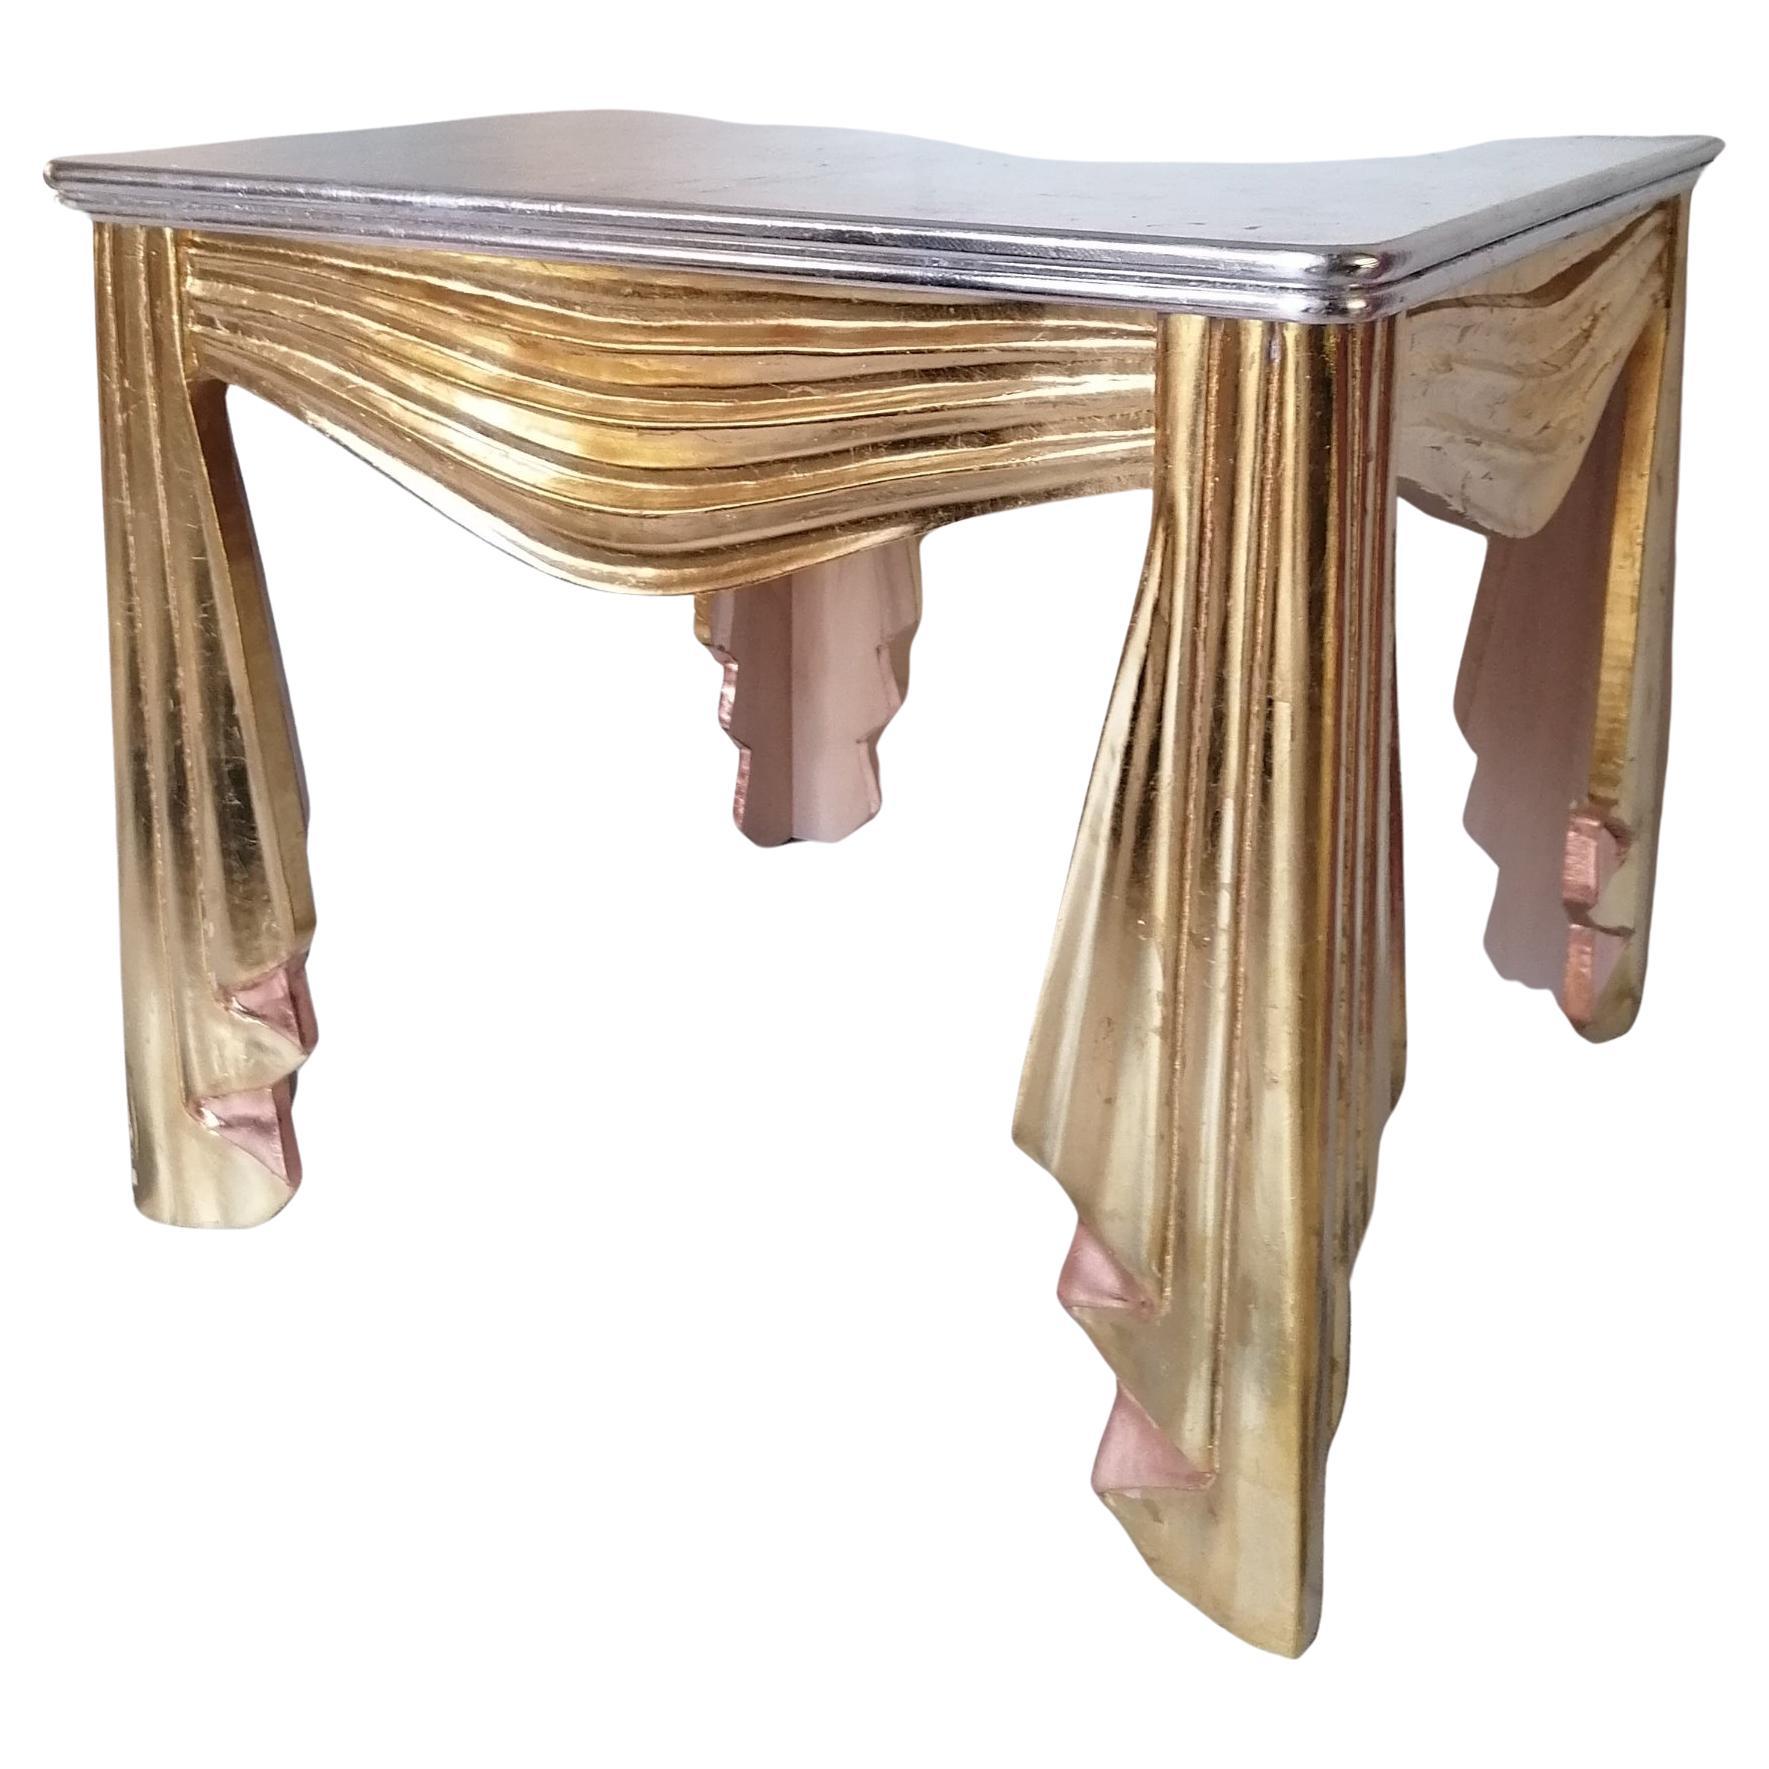 Table décorative en bois sculpté et doré de style Hollywood Regency, en forme de tissu froncé et ruché. Dessus en argent doré. USA, années 1960 / 1970. La finition est un peu vieillie par endroits, mais dans l'ensemble, elle est superbe.

Dimensions